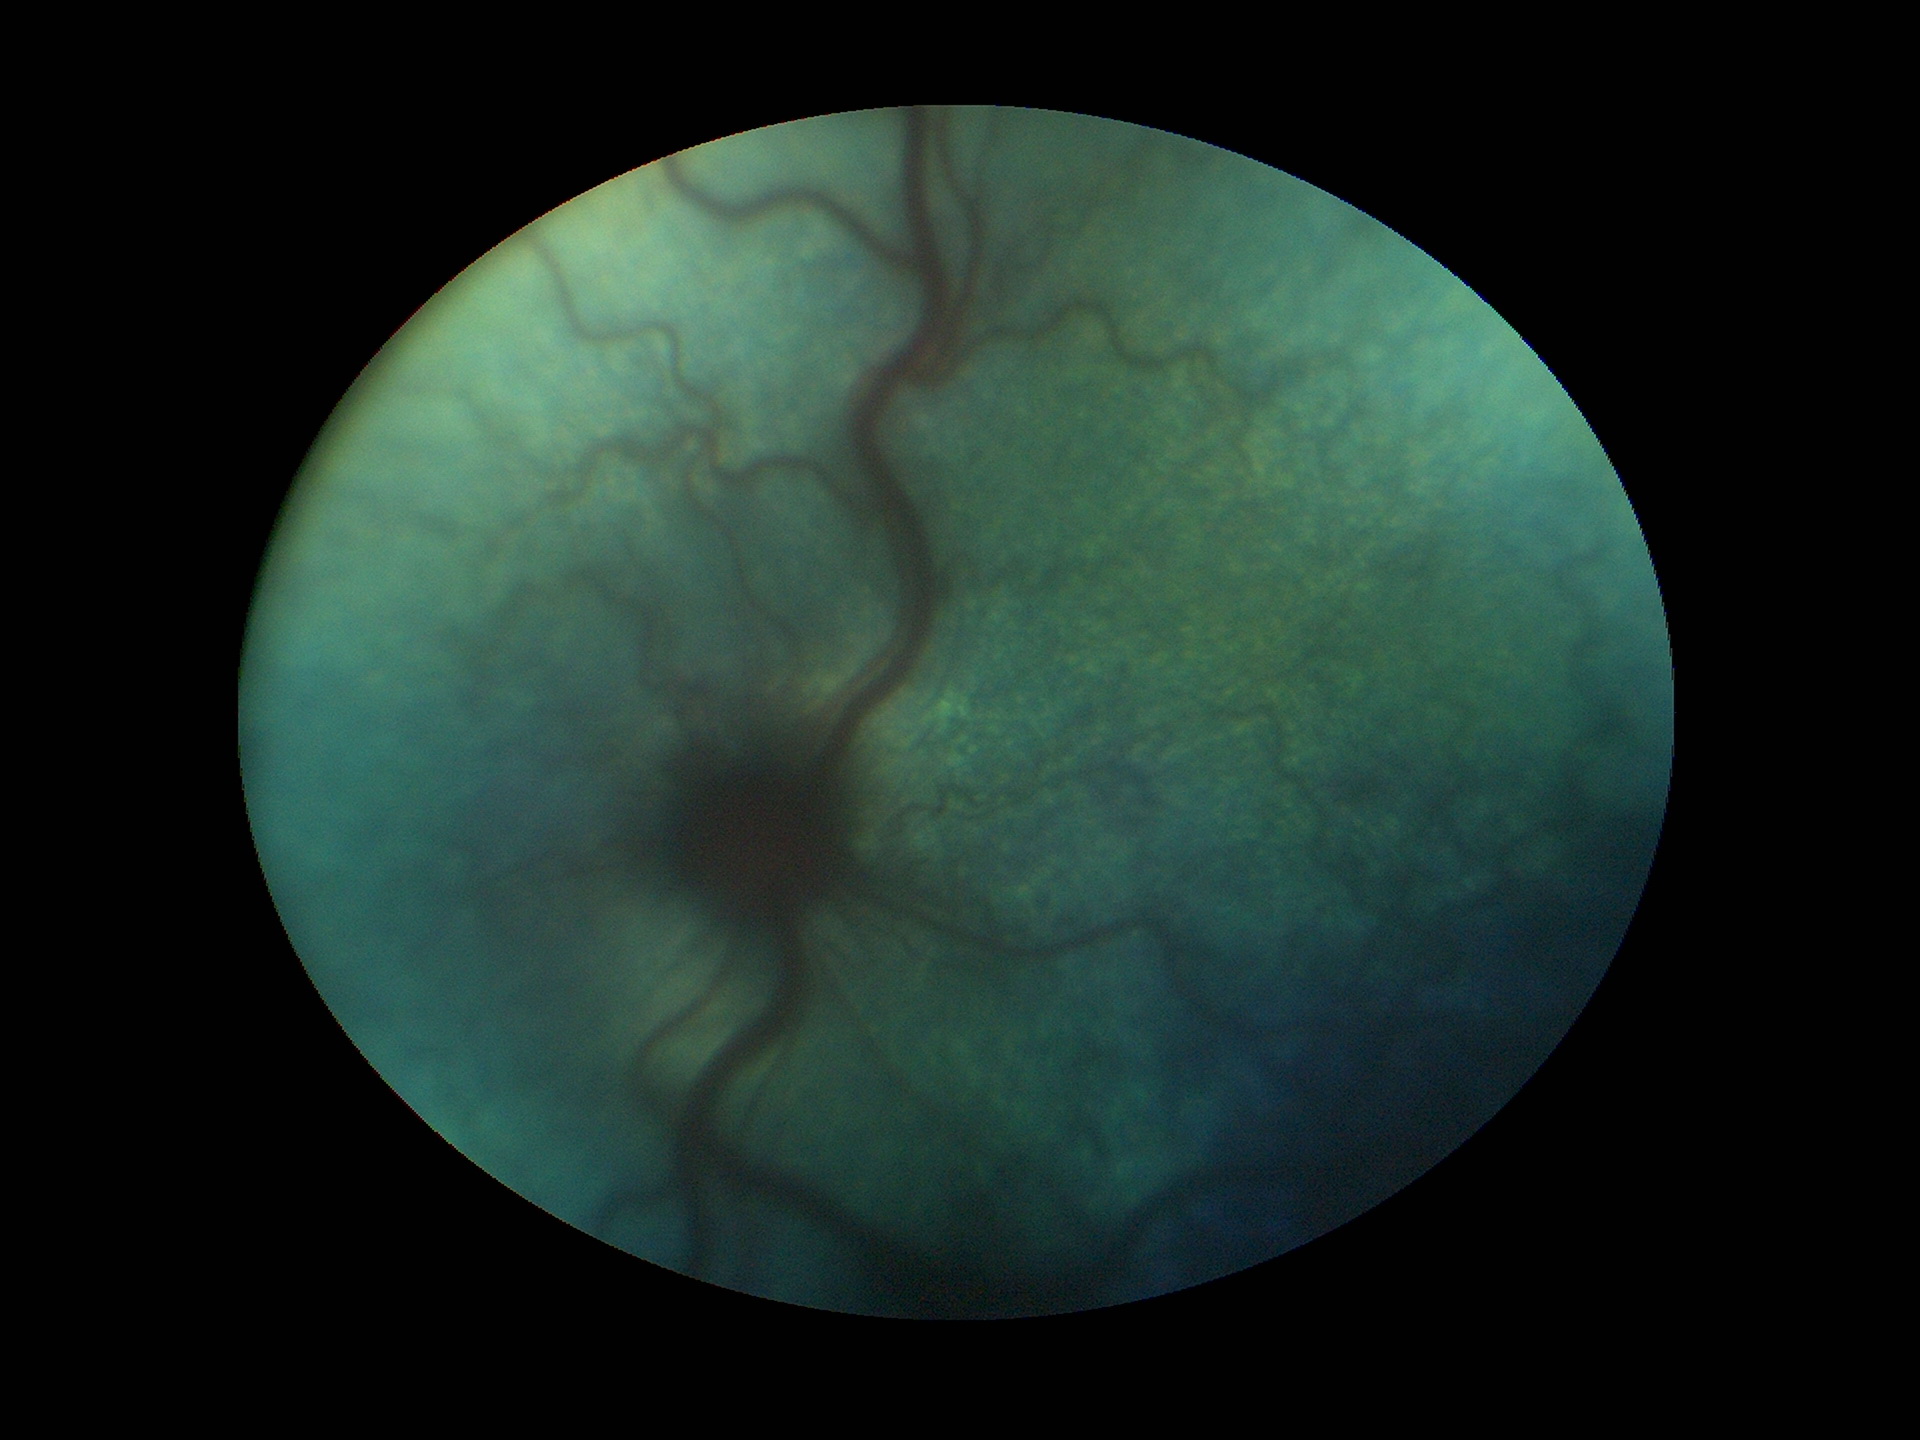 Рис.17 Передний увеит,увеальная глаукома,хориоретинит,гипервискозный синдром и неврит ДЗН у кота с FeLV ,FIP(глазное дно на левом глазу изначально не просматривалось).